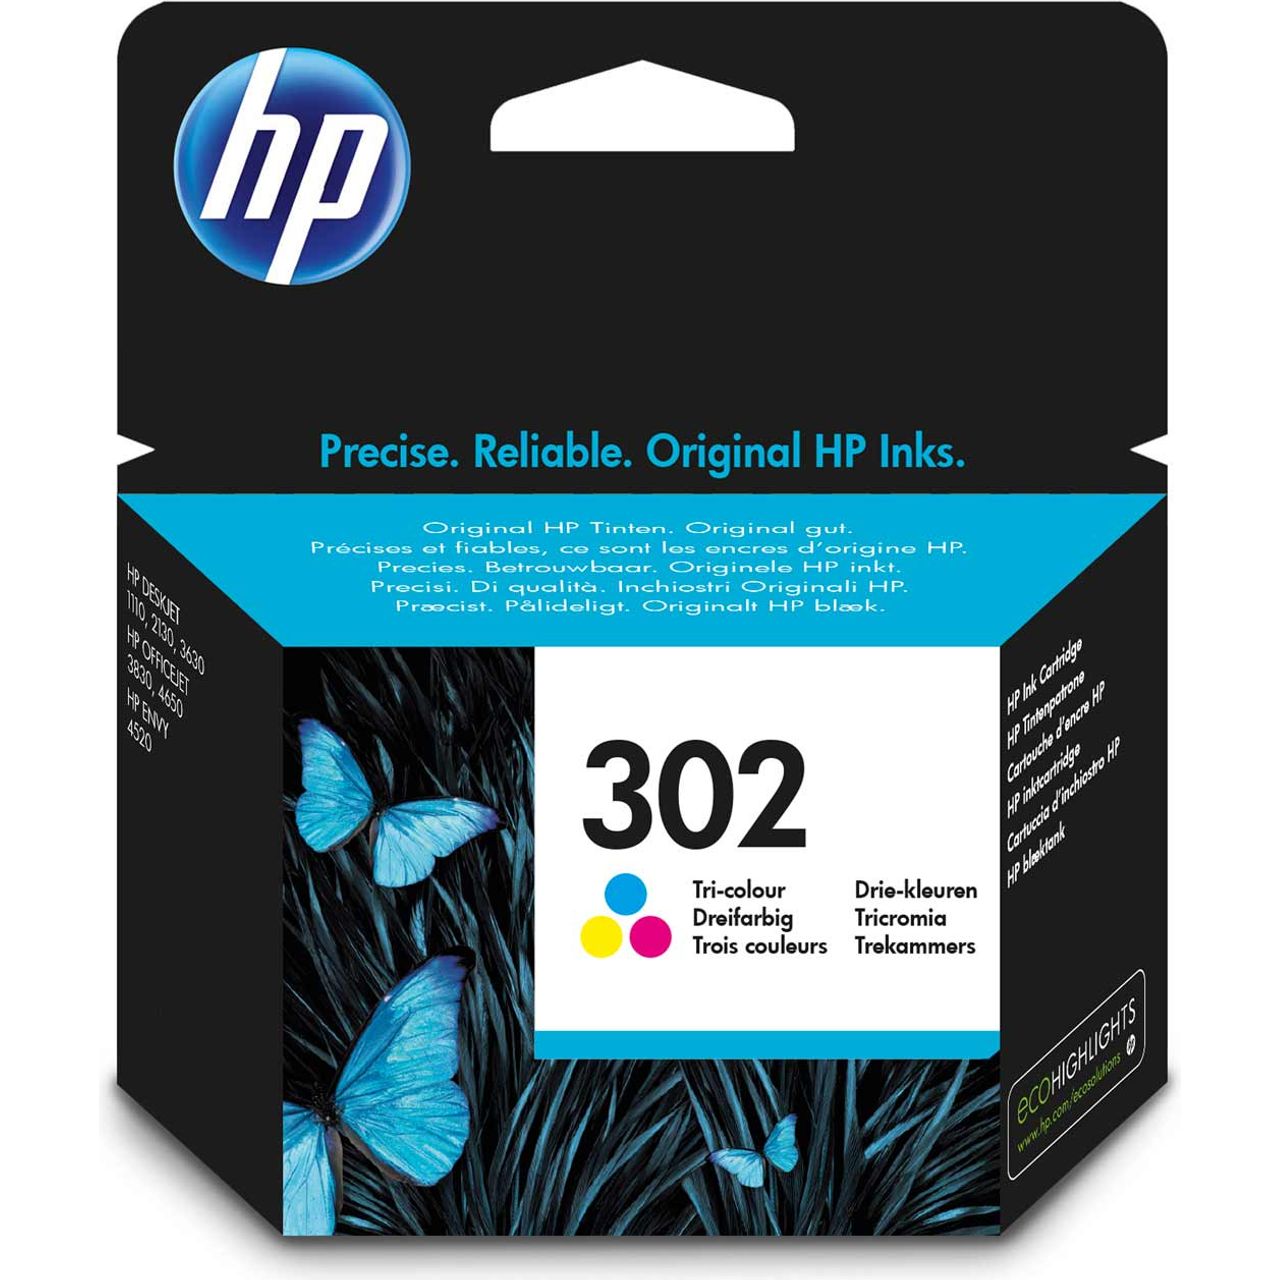 HP 302 Tri-color Original Ink Cartridge Review